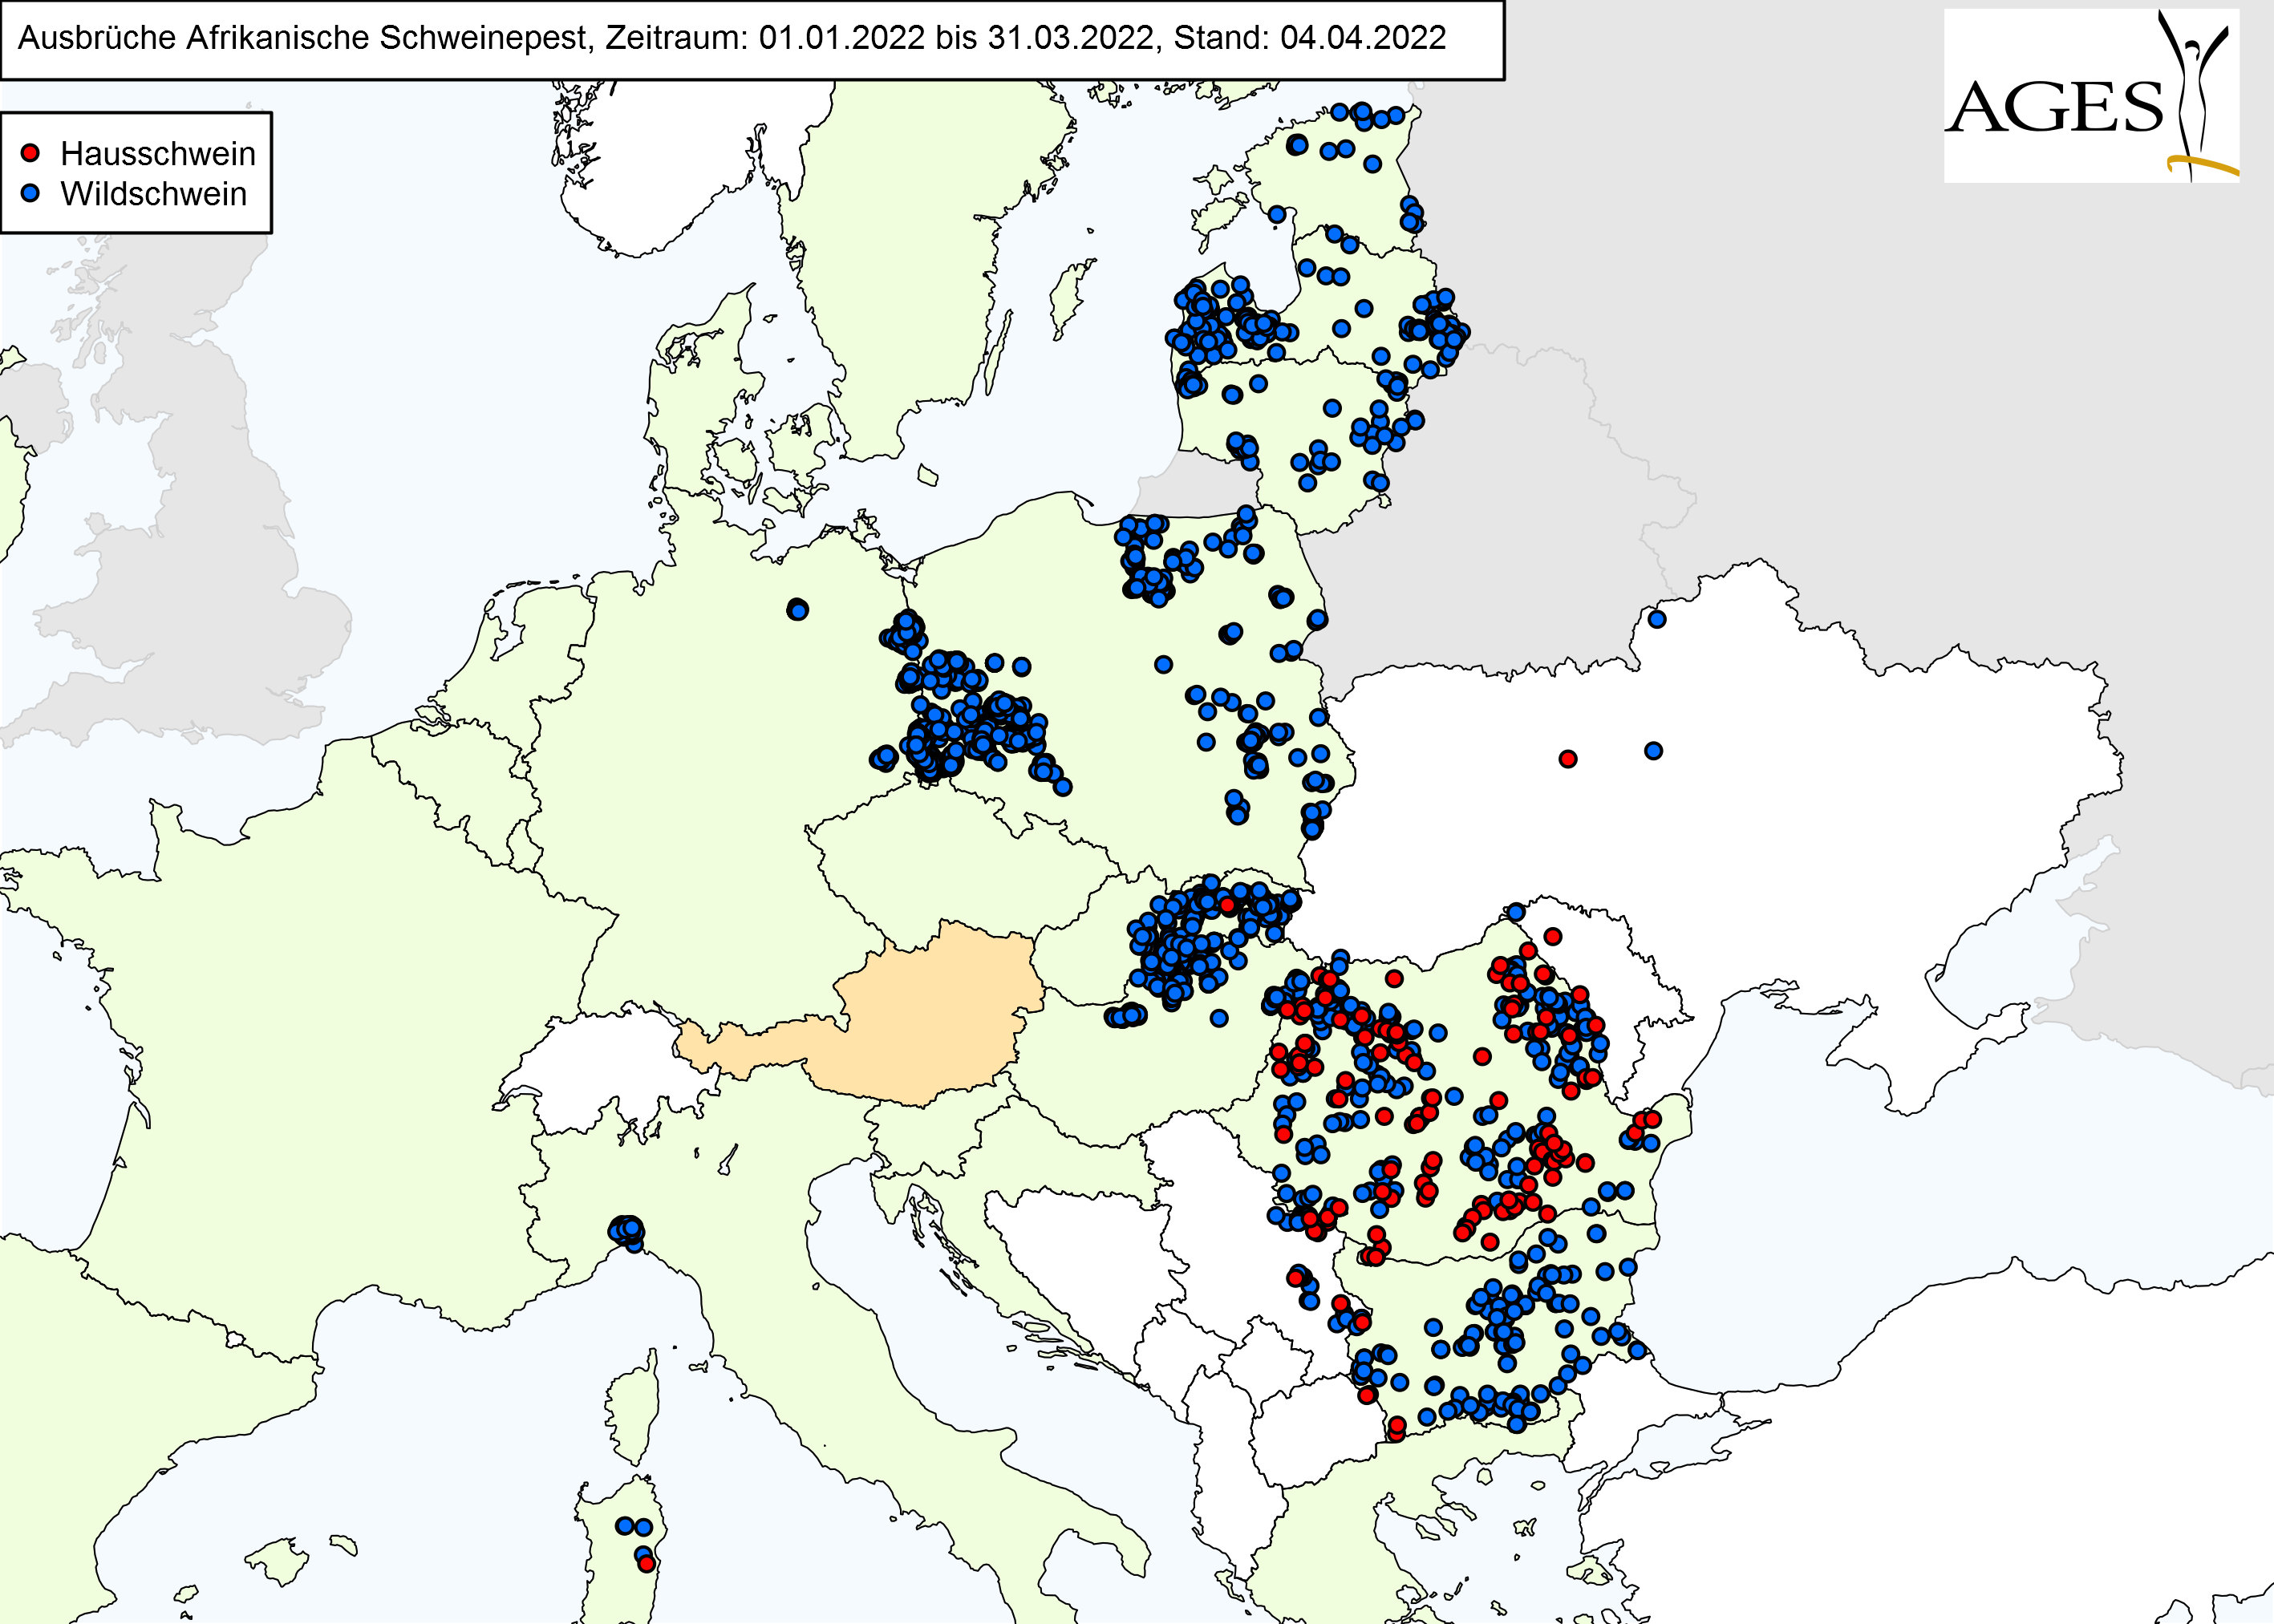 Europakarte zu ASP-Fällen wie in "Situation in Europa" beschrieben.